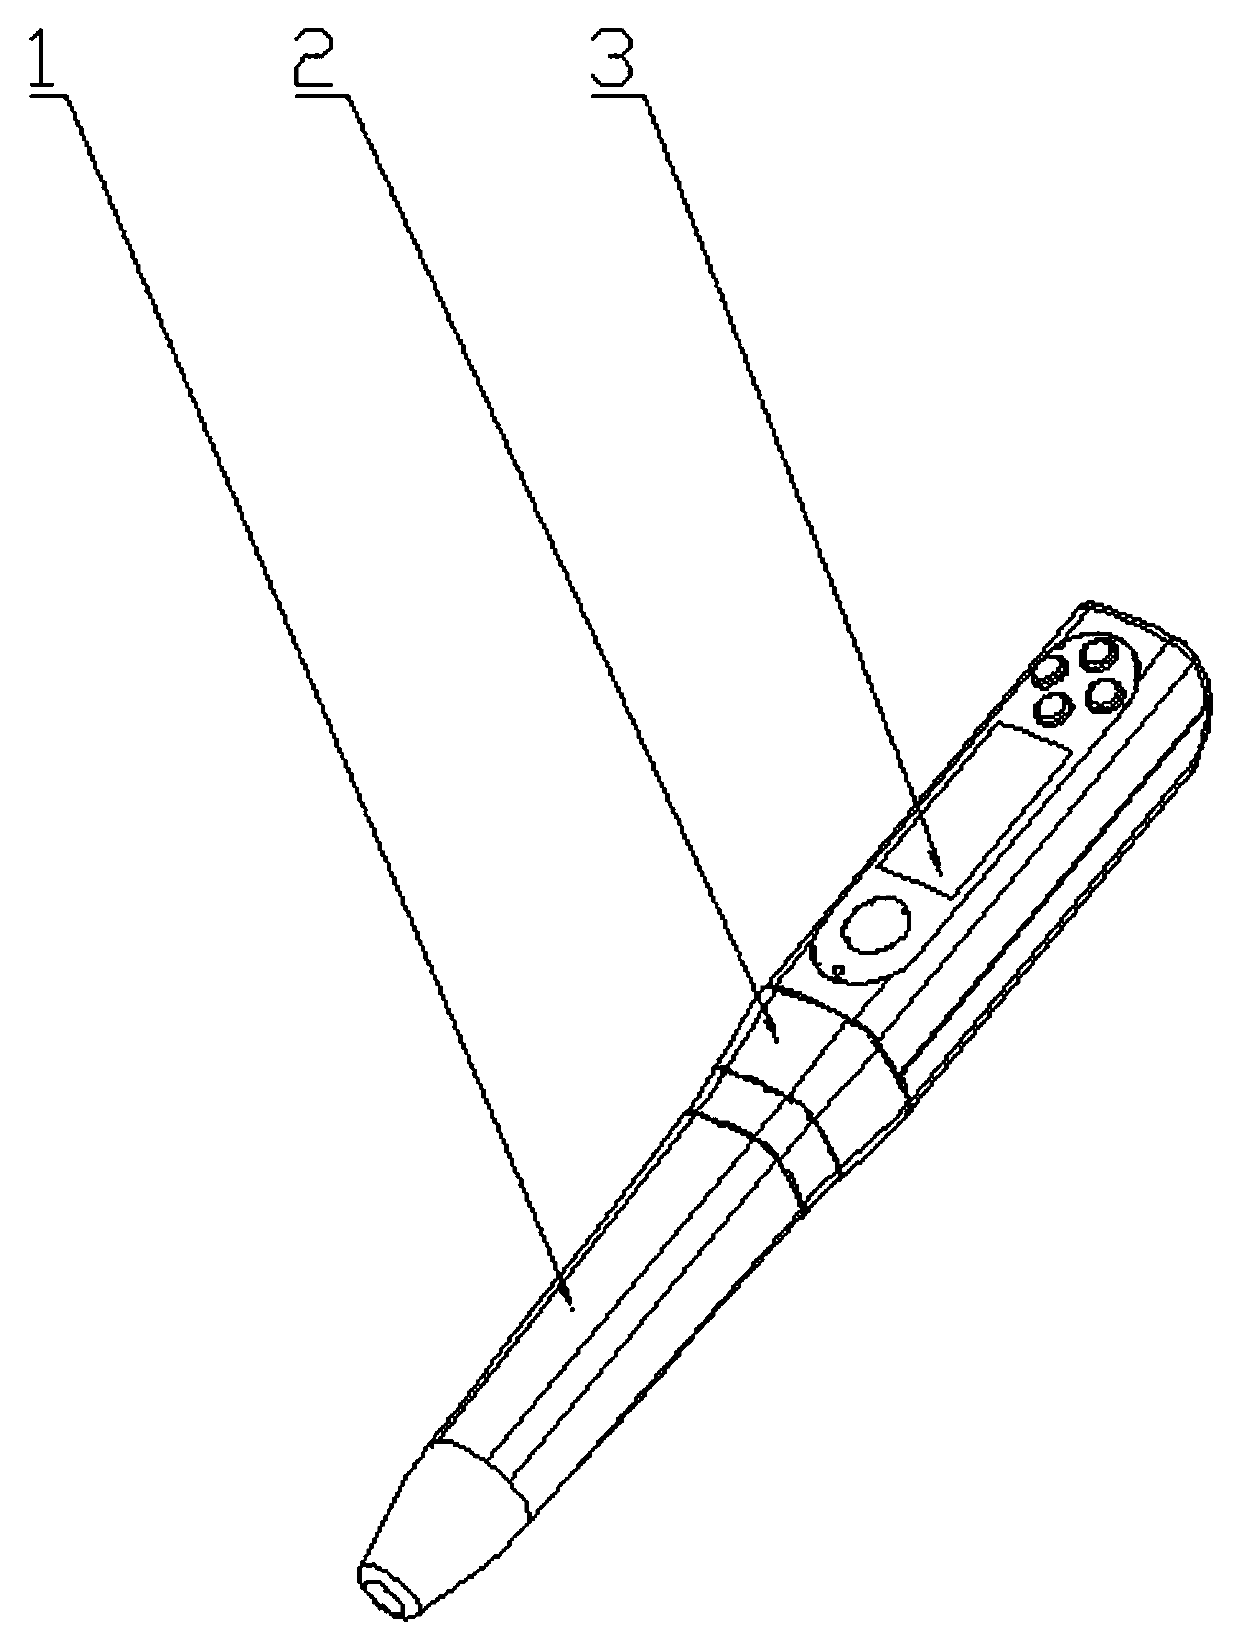 Novel electronic pen syringe